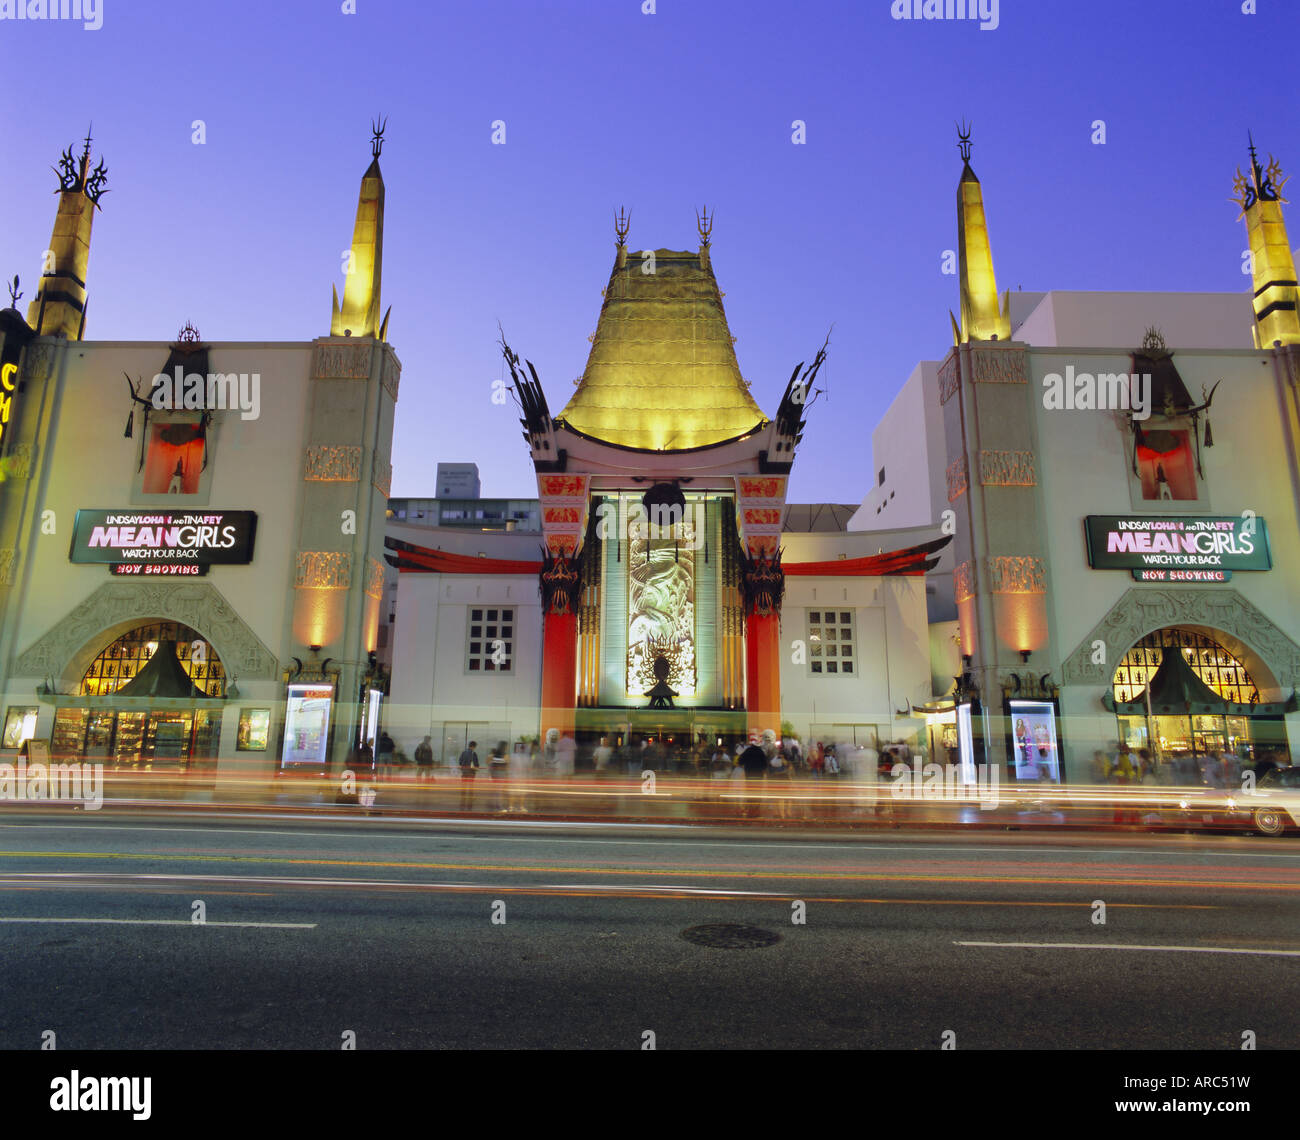 Graumann's Chinese Theatre, Los Angeles, Californie, USA, Amérique du Nord Banque D'Images